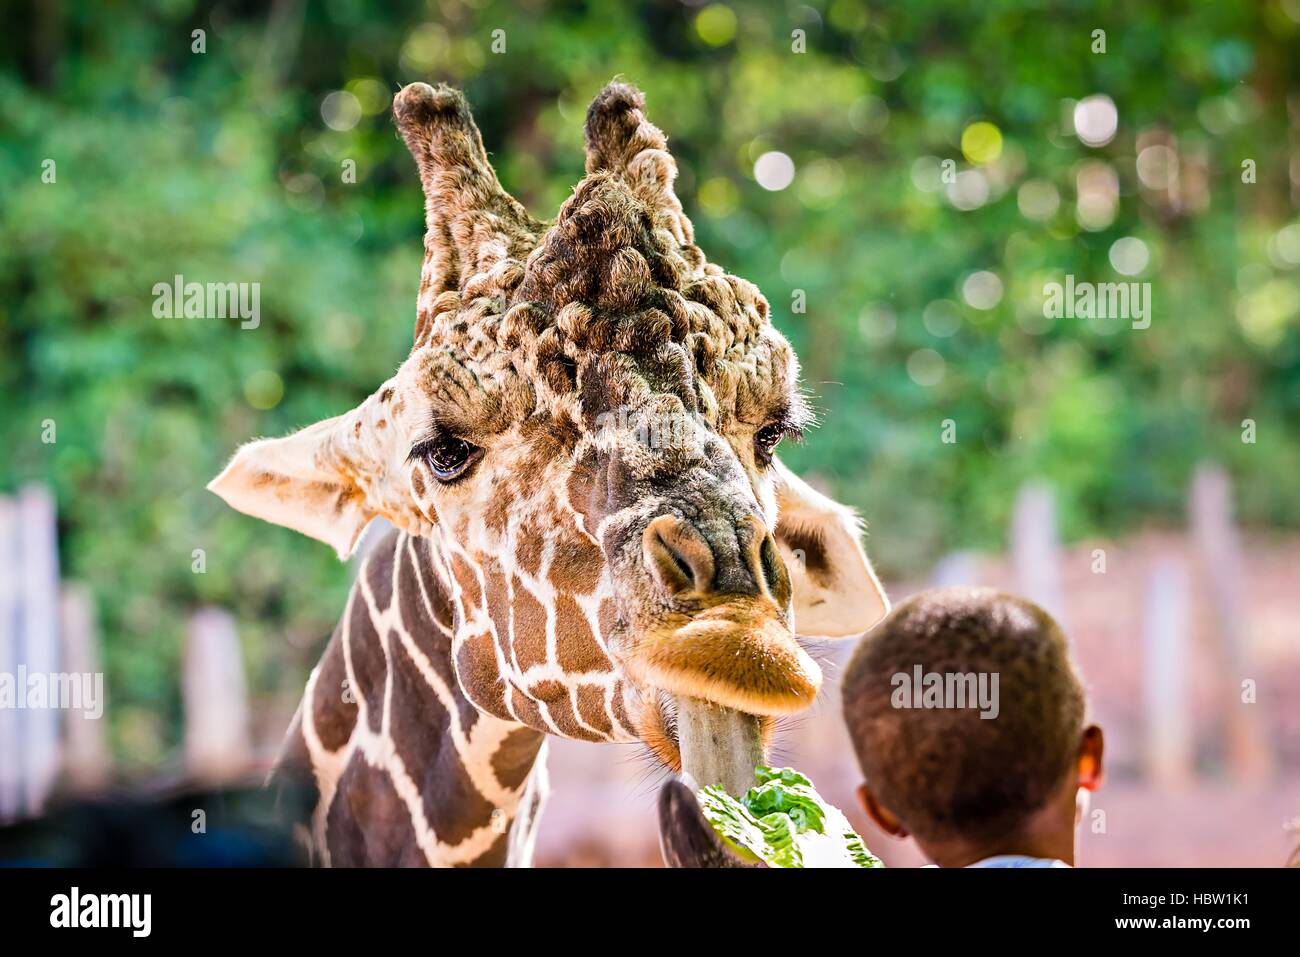 La giraffa avanzamento sul verde delle foglie di lattuga Foto Stock